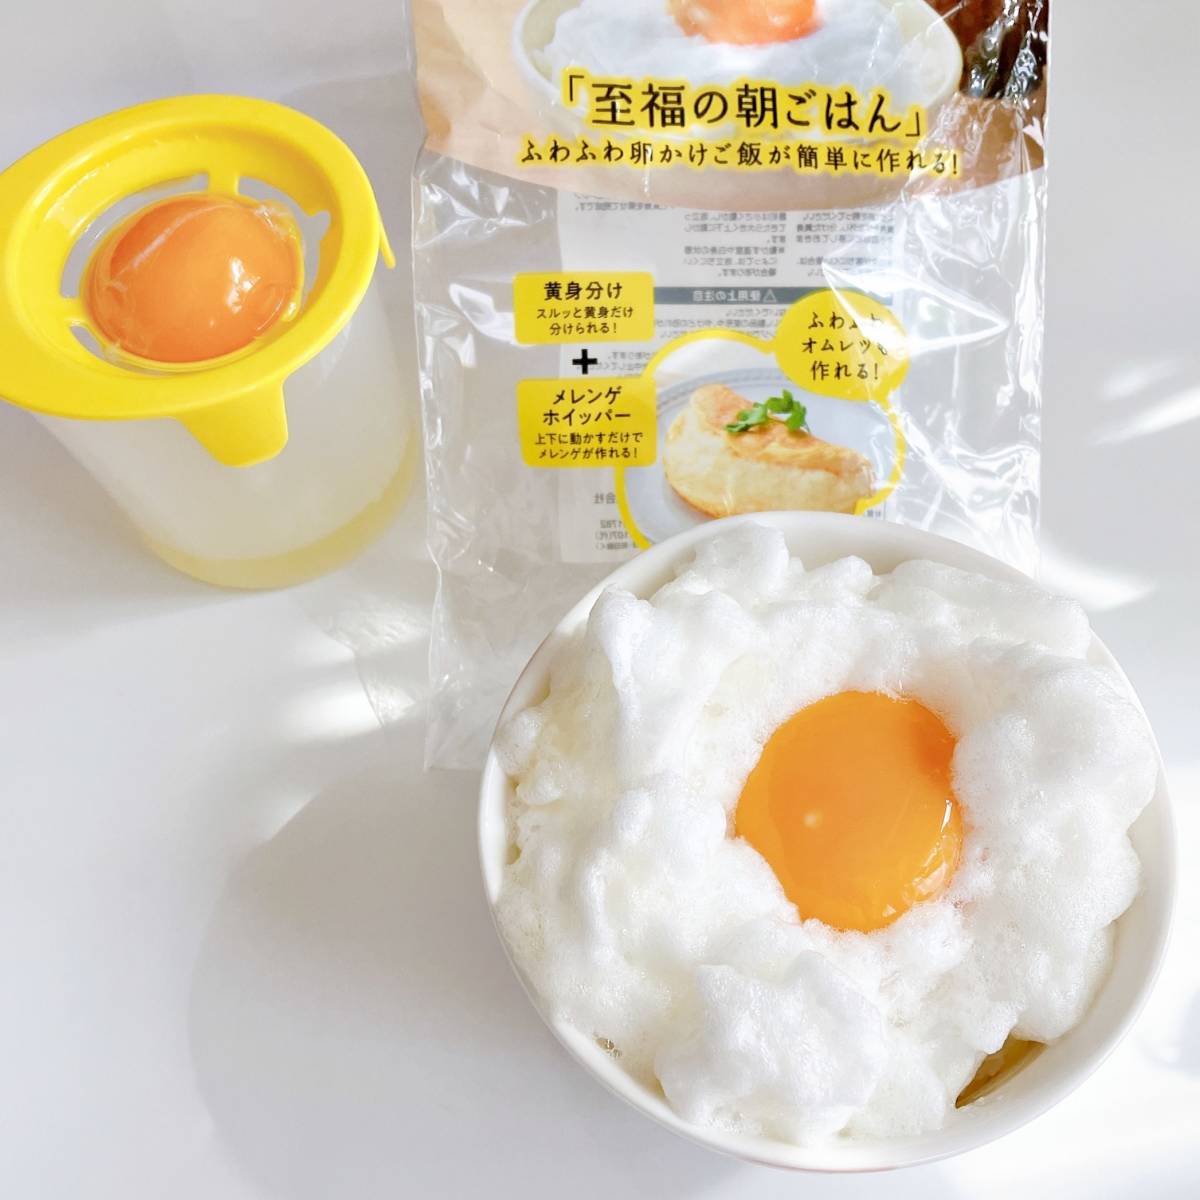  нежный eg производитель me китайский астрагал яйцо новый товар нераспечатанный TKG Homme retsu ho ipa- метелка яйцо .. рис бисквит кондитерские изделия Tama . шар .